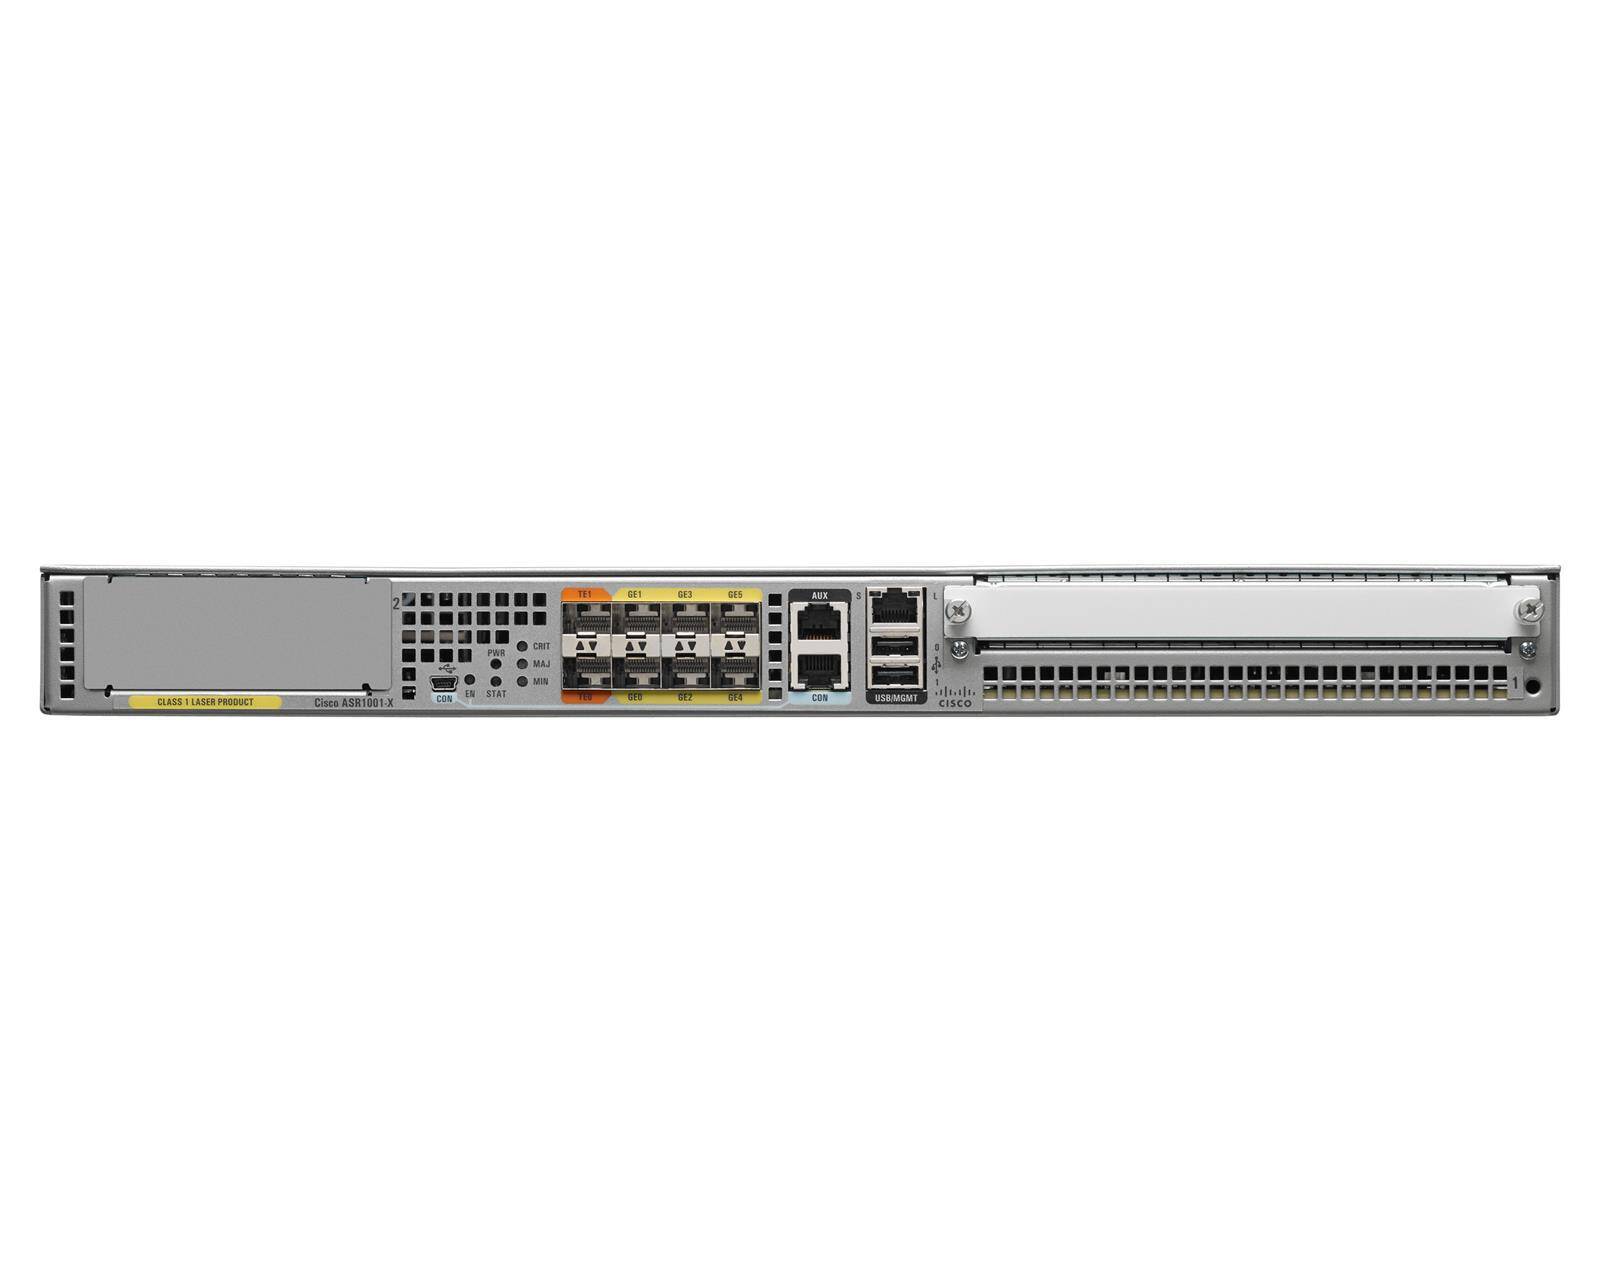 ASR1001-X - 6x 1G SFP, 2x 10GE SFP+, 2x Zasilacz AC, 16GB DRAM, 20 Gbps, Cisco ASR 1000 Router